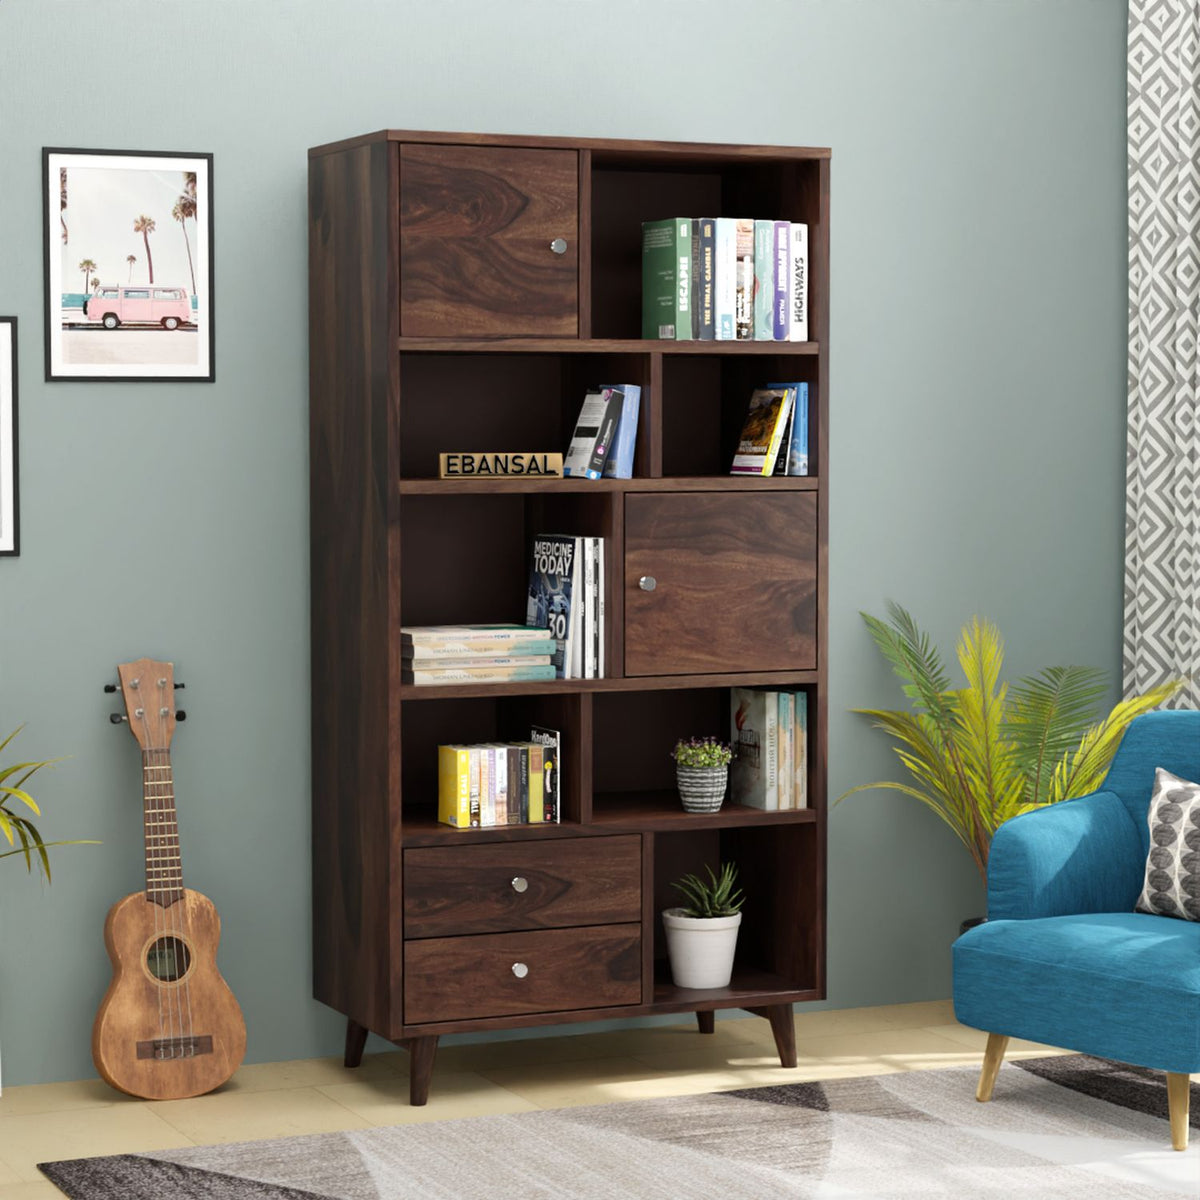 Befree Solid Sheesham Wood Bookshelf (Walnut Finish)